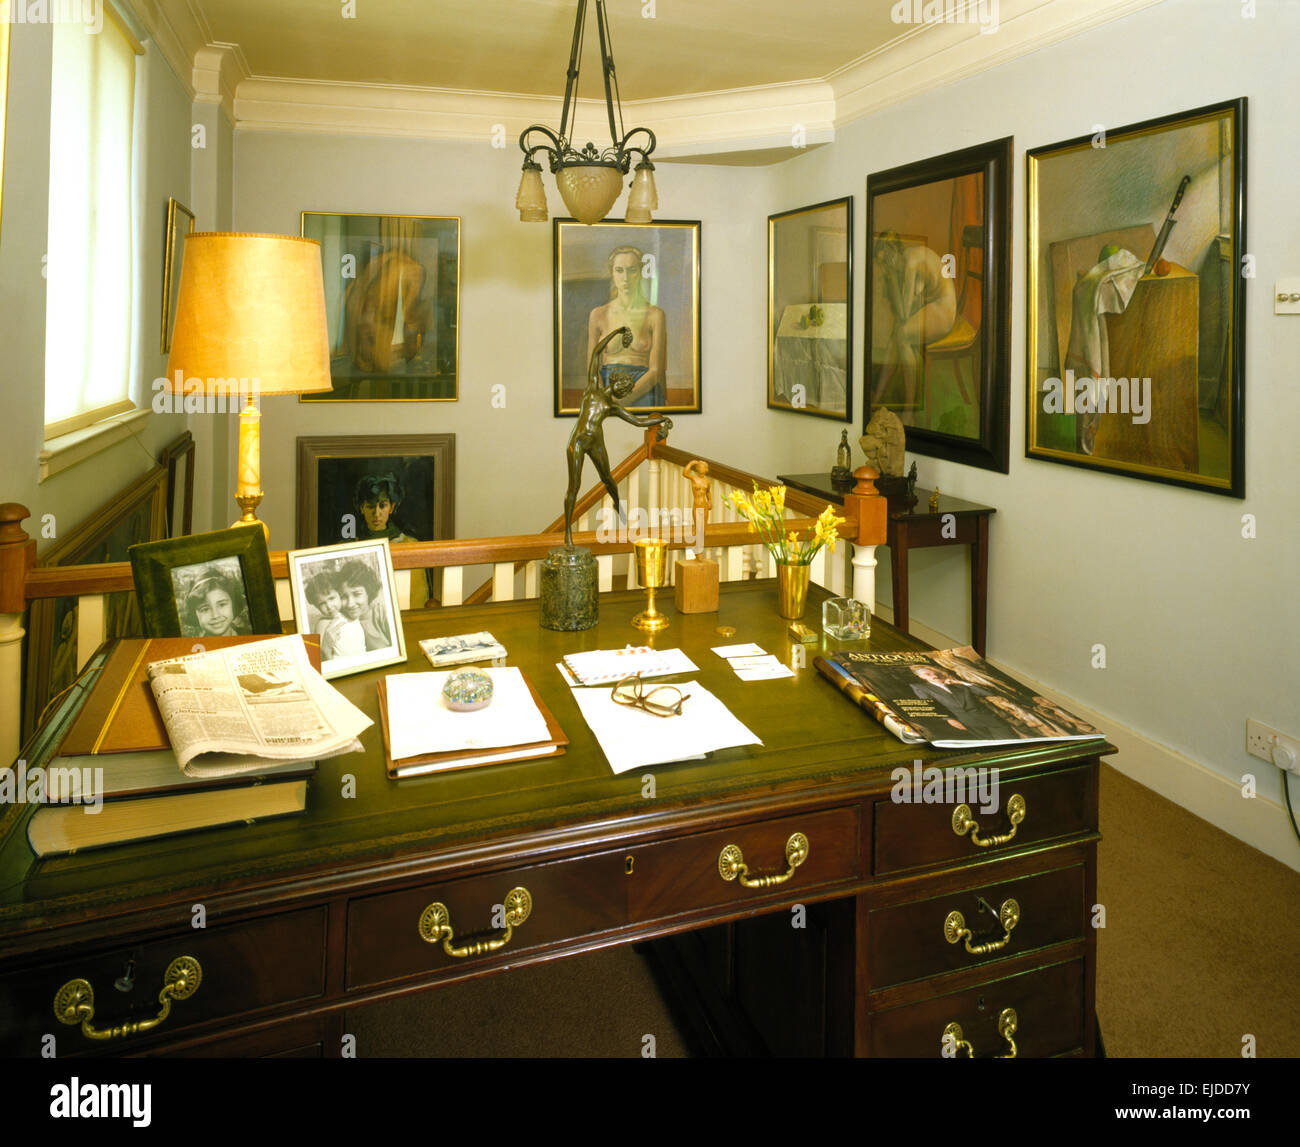 Cuoio e rabboccato antica scrivania in studio degli anni ottanta con gruppo di dipinti sulle pareti Foto Stock